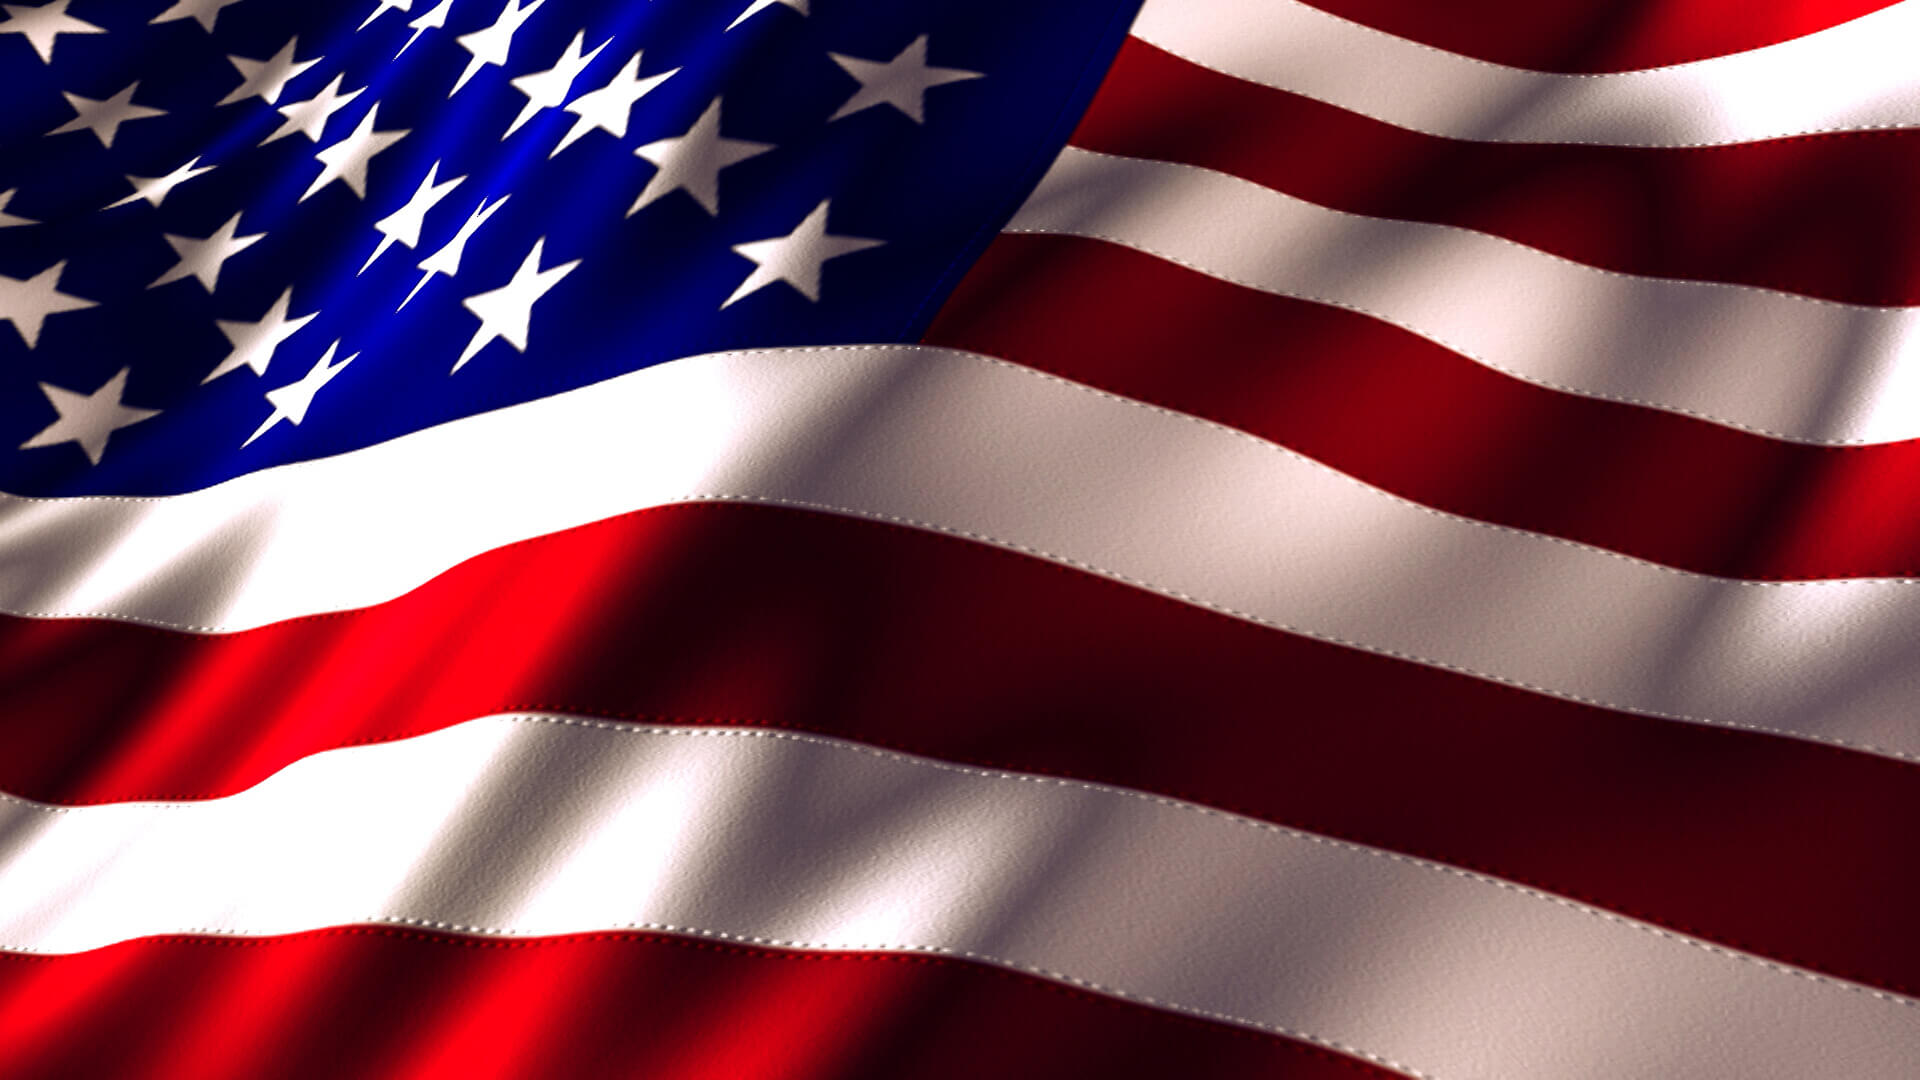 American flag symbolizing patriotism